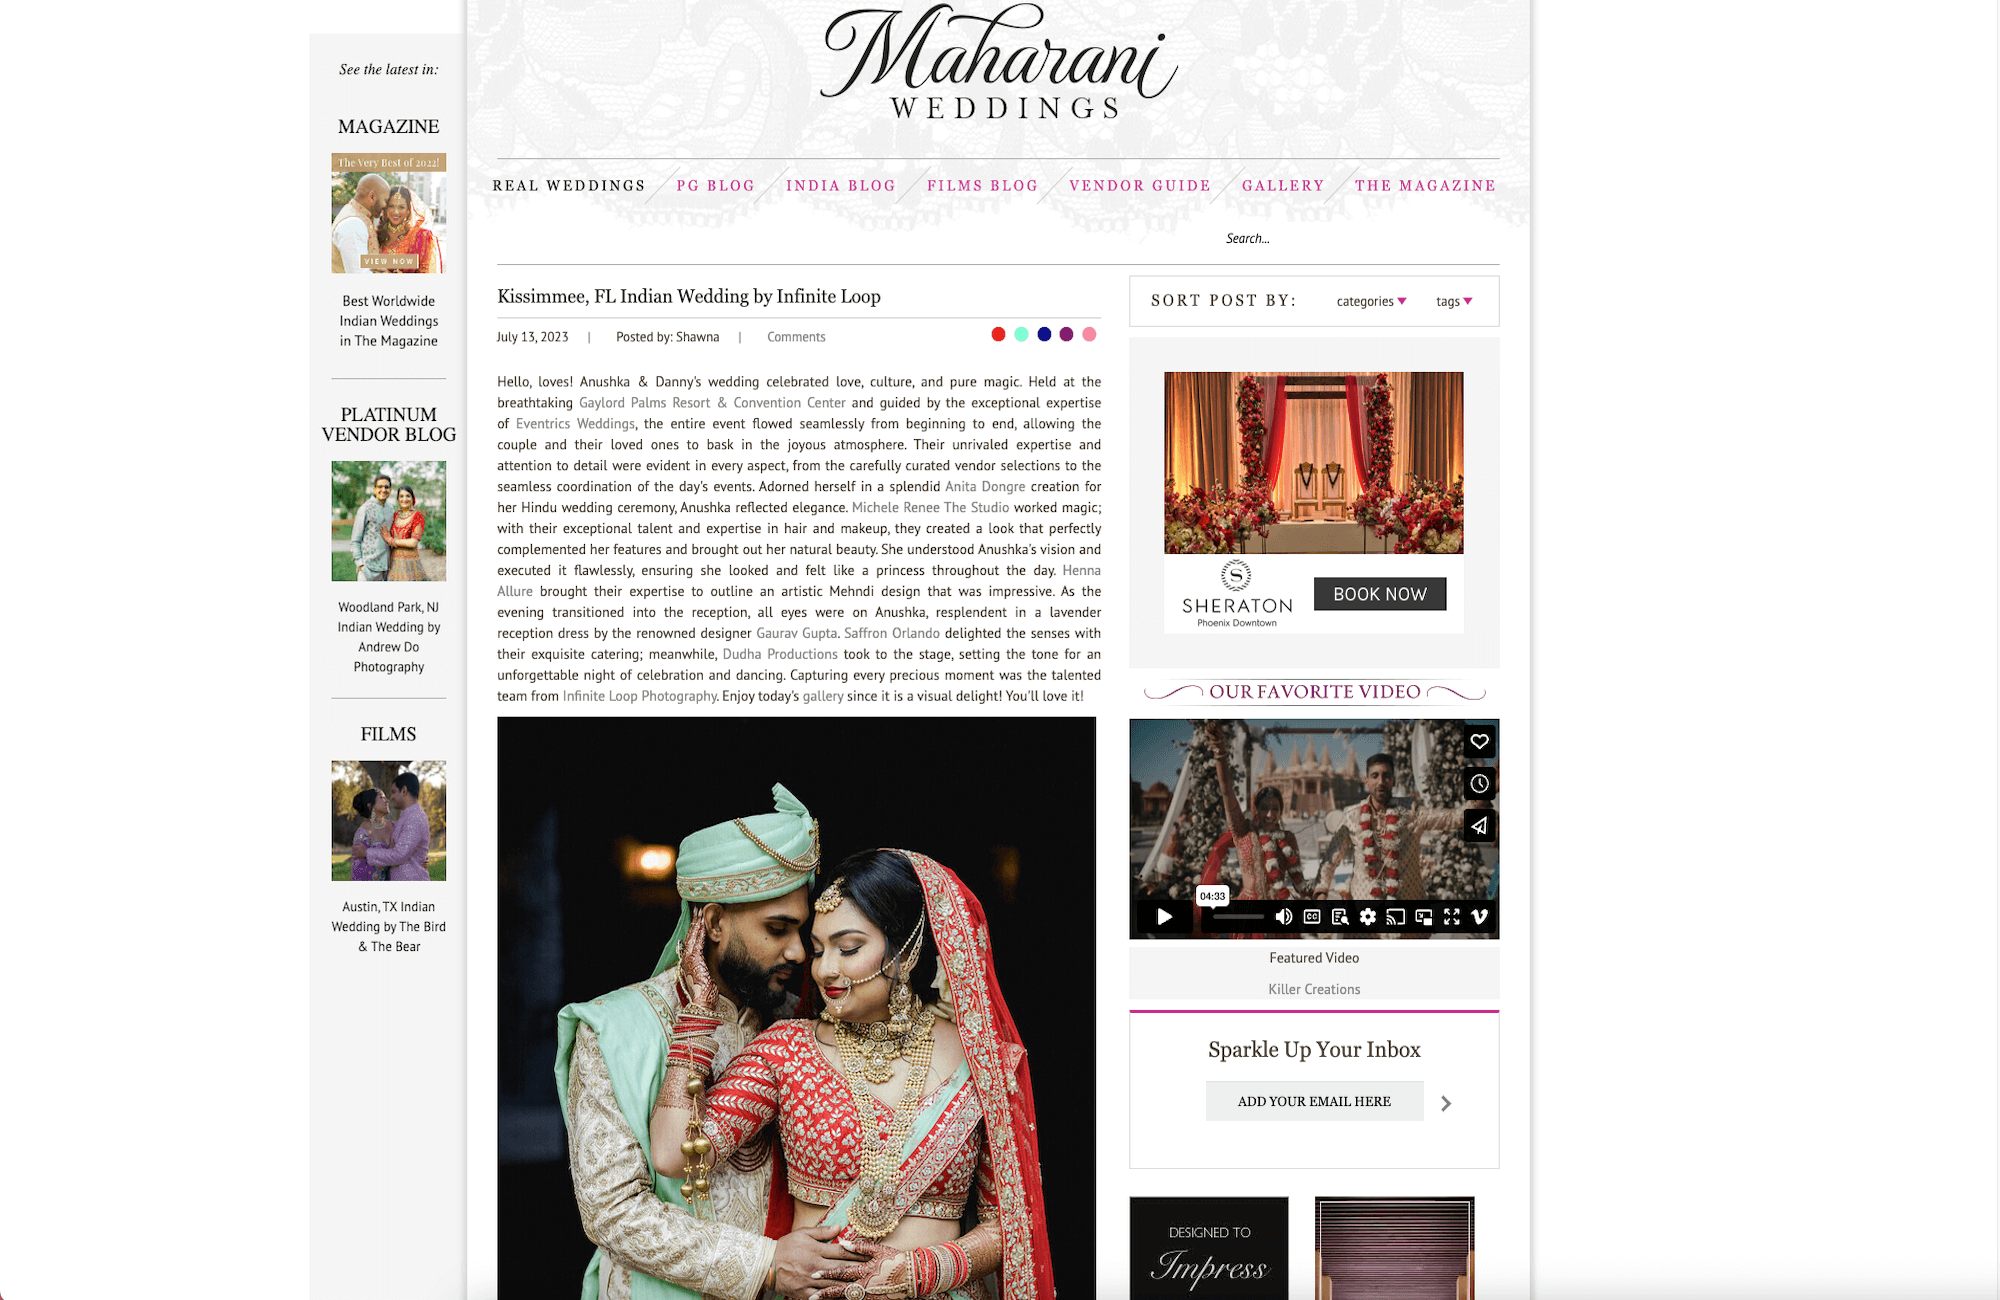 Kissimmee, FL Indian Wedding by Infinite Loop